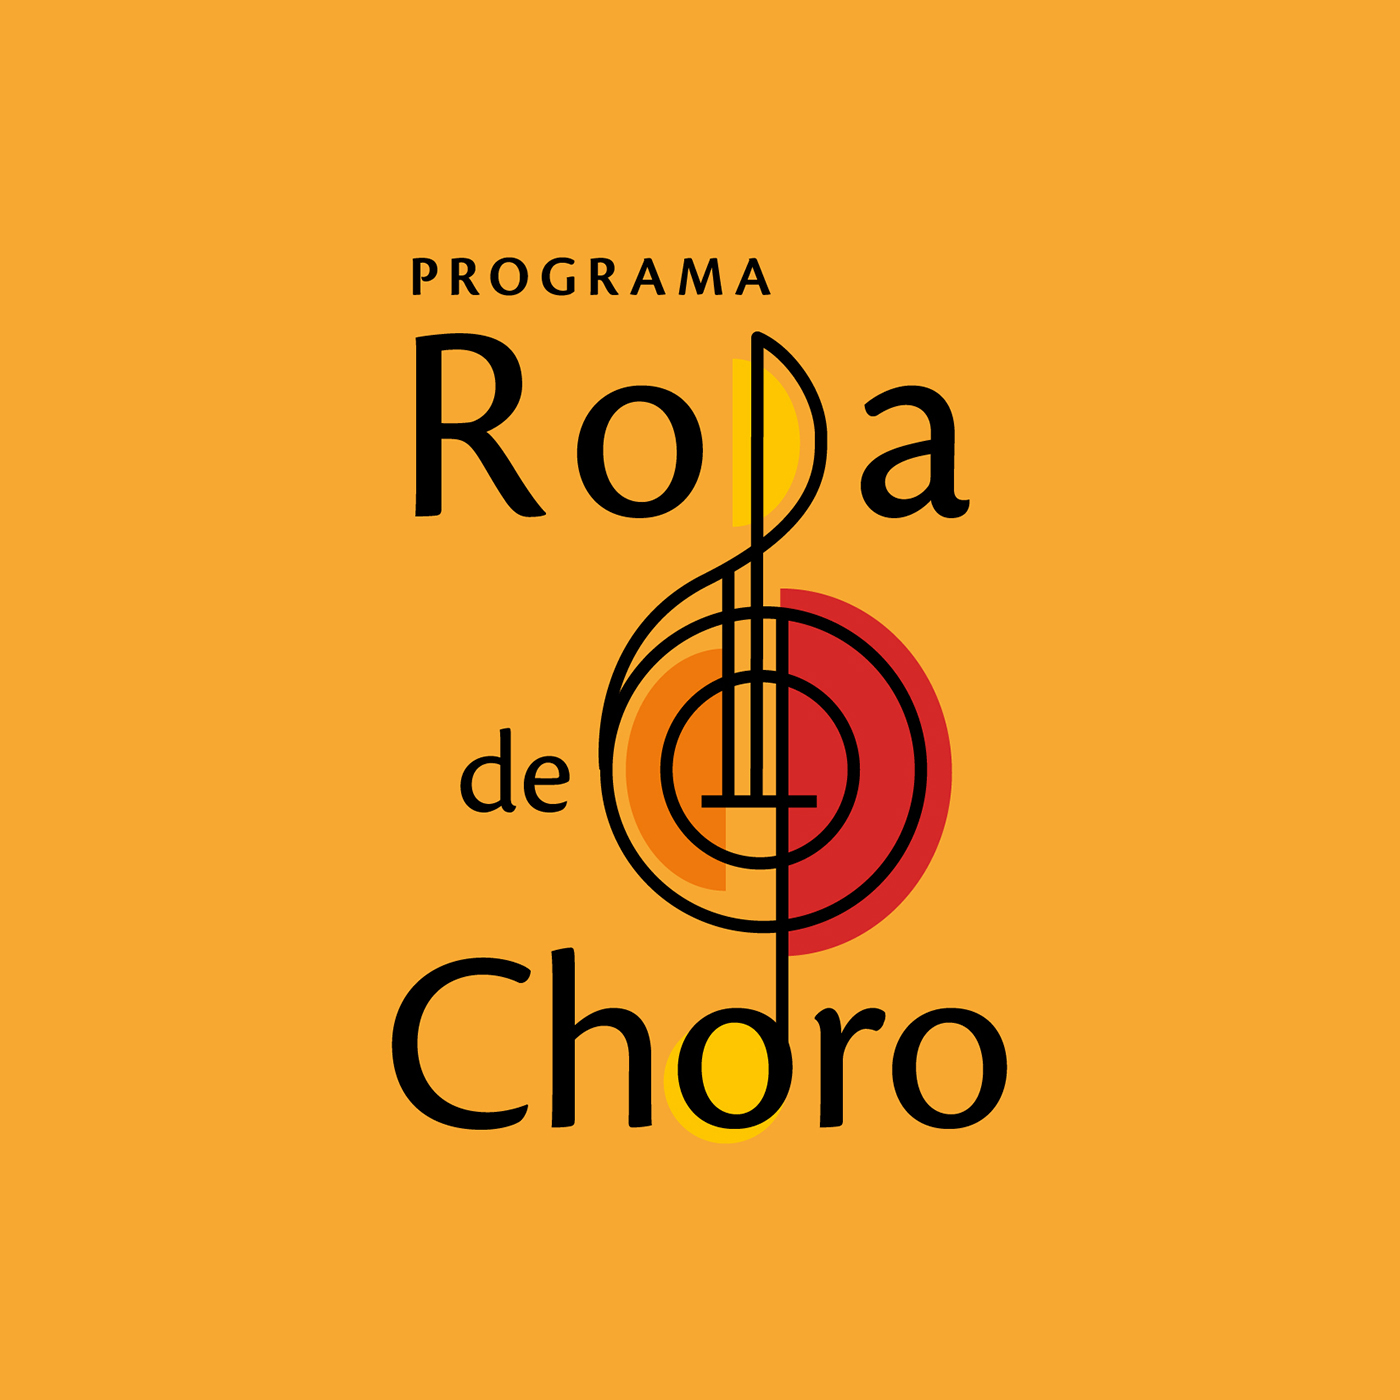 RODA DE CHORO